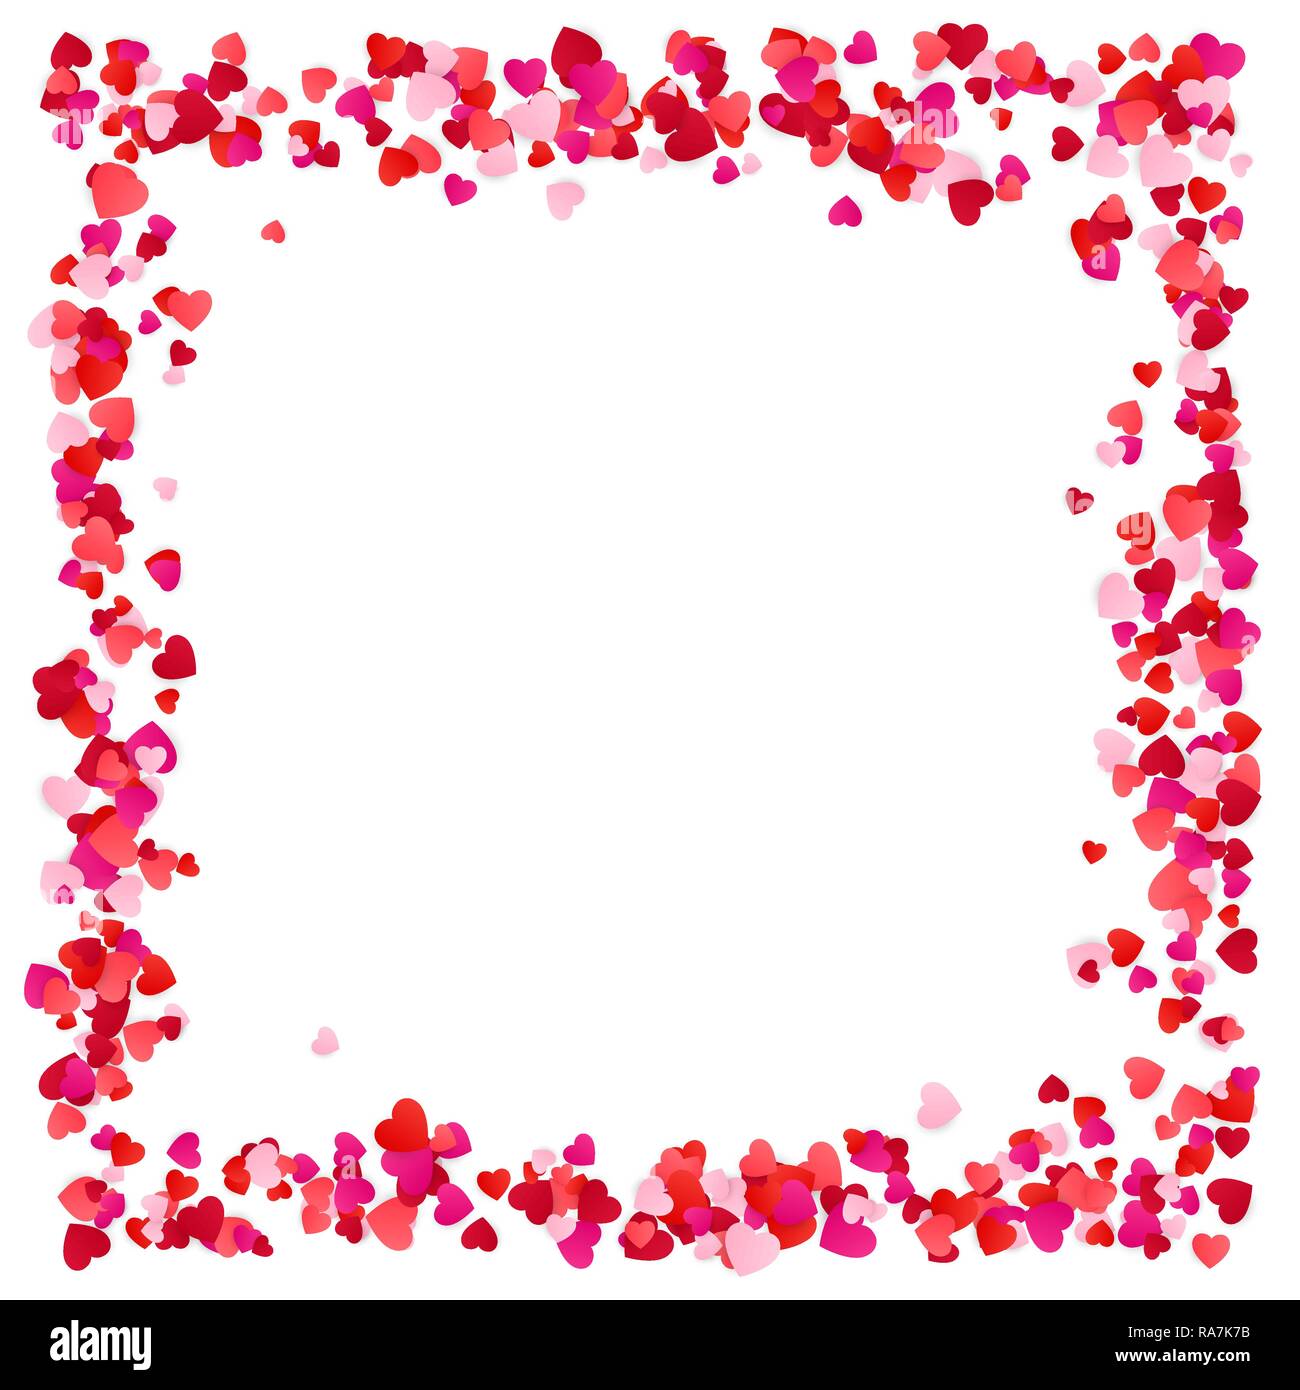 Rotes Papier Herzen Rahmen Hintergrund. Herz Rahmen mit Platz für Text. Romantische zerstreuten Herzen Textur. Vector Illustration Stock Vektor